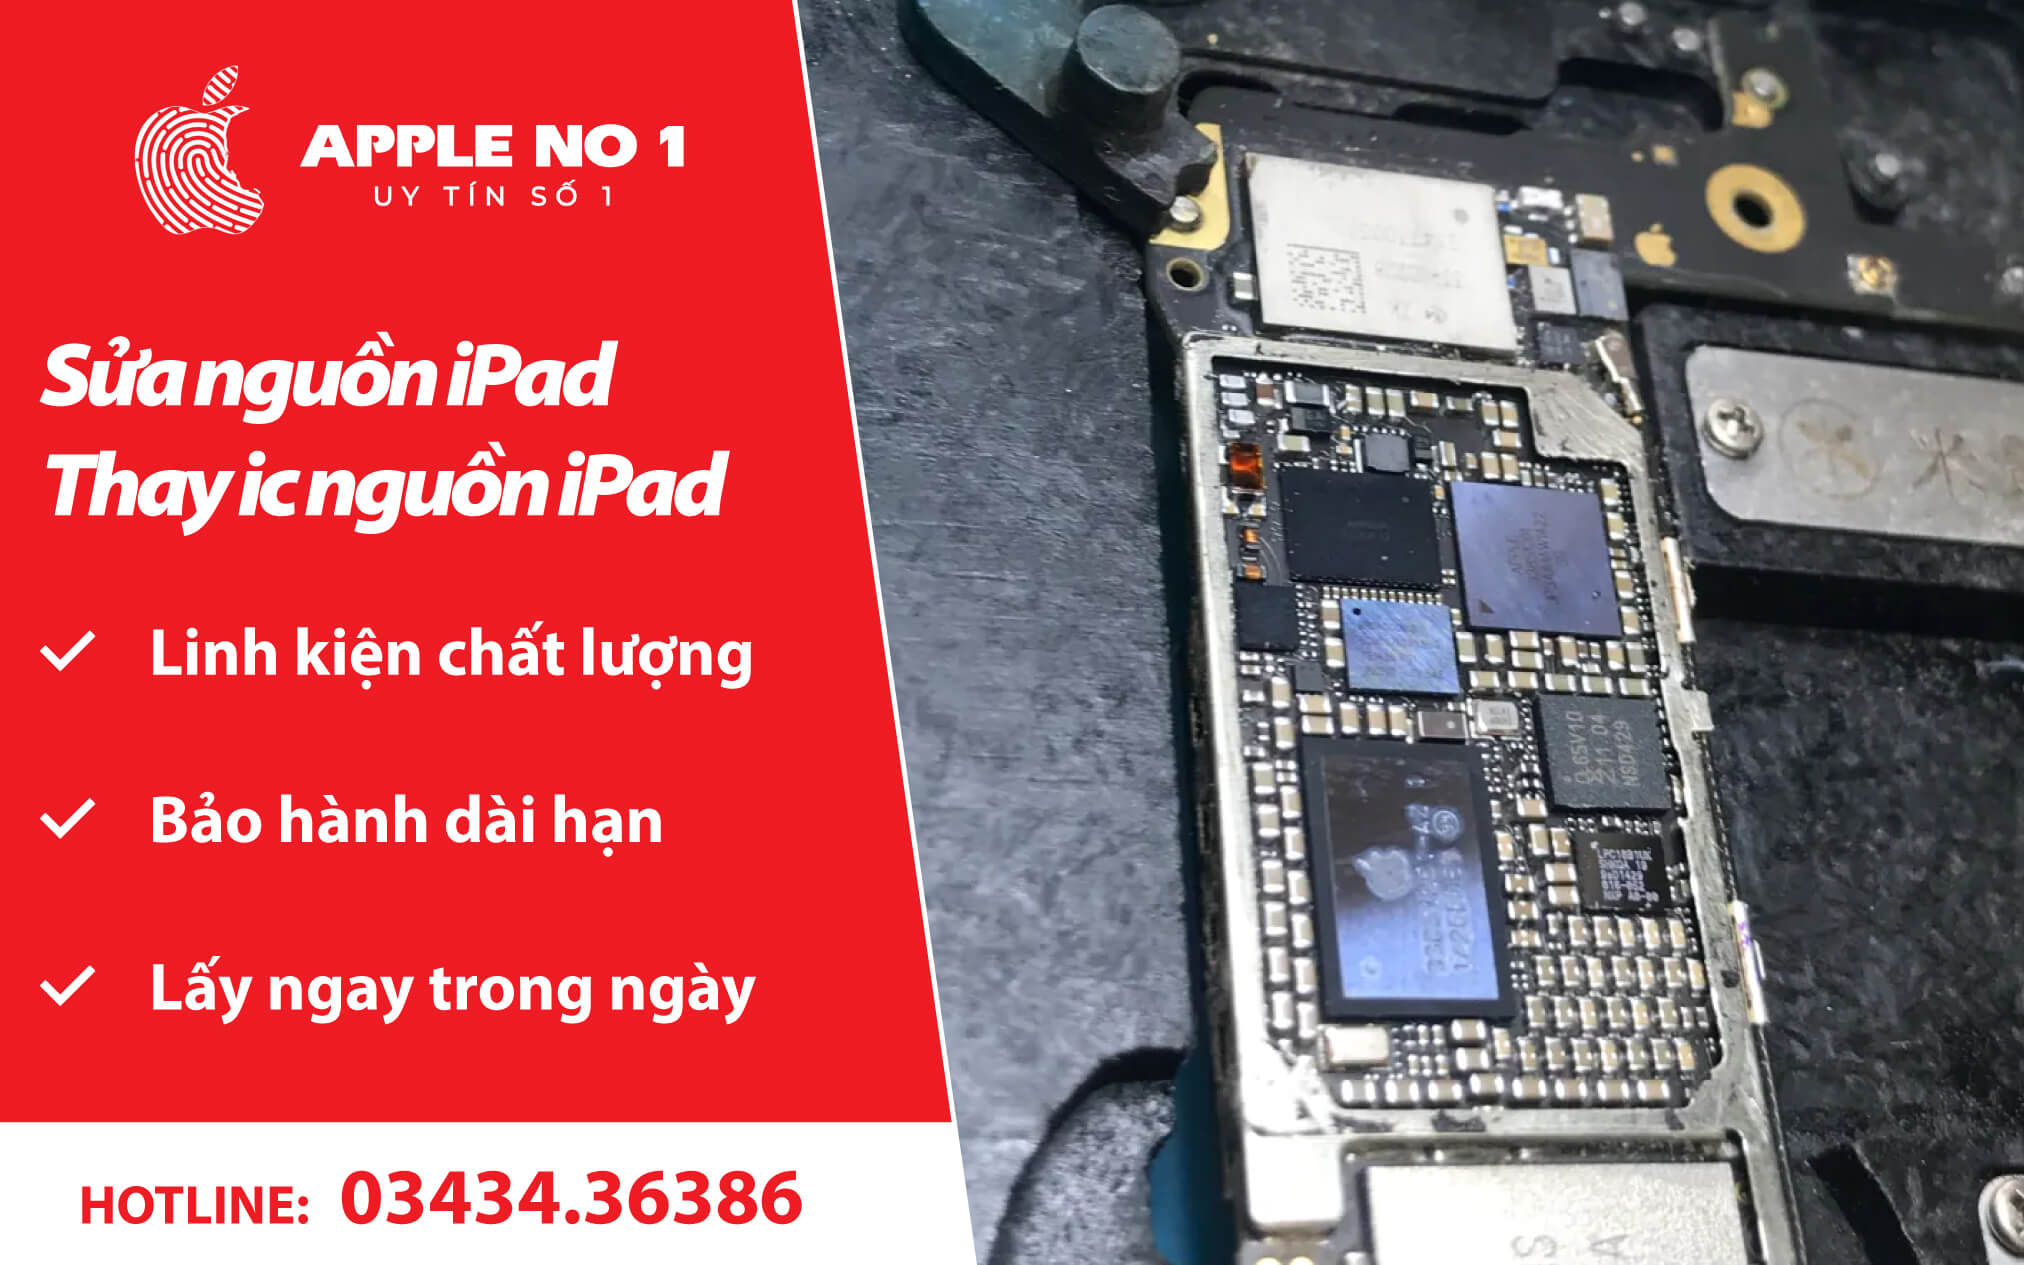 sửa thay ic nguồn ipad, sửa nguồn iPad Hà Nội - appleno1